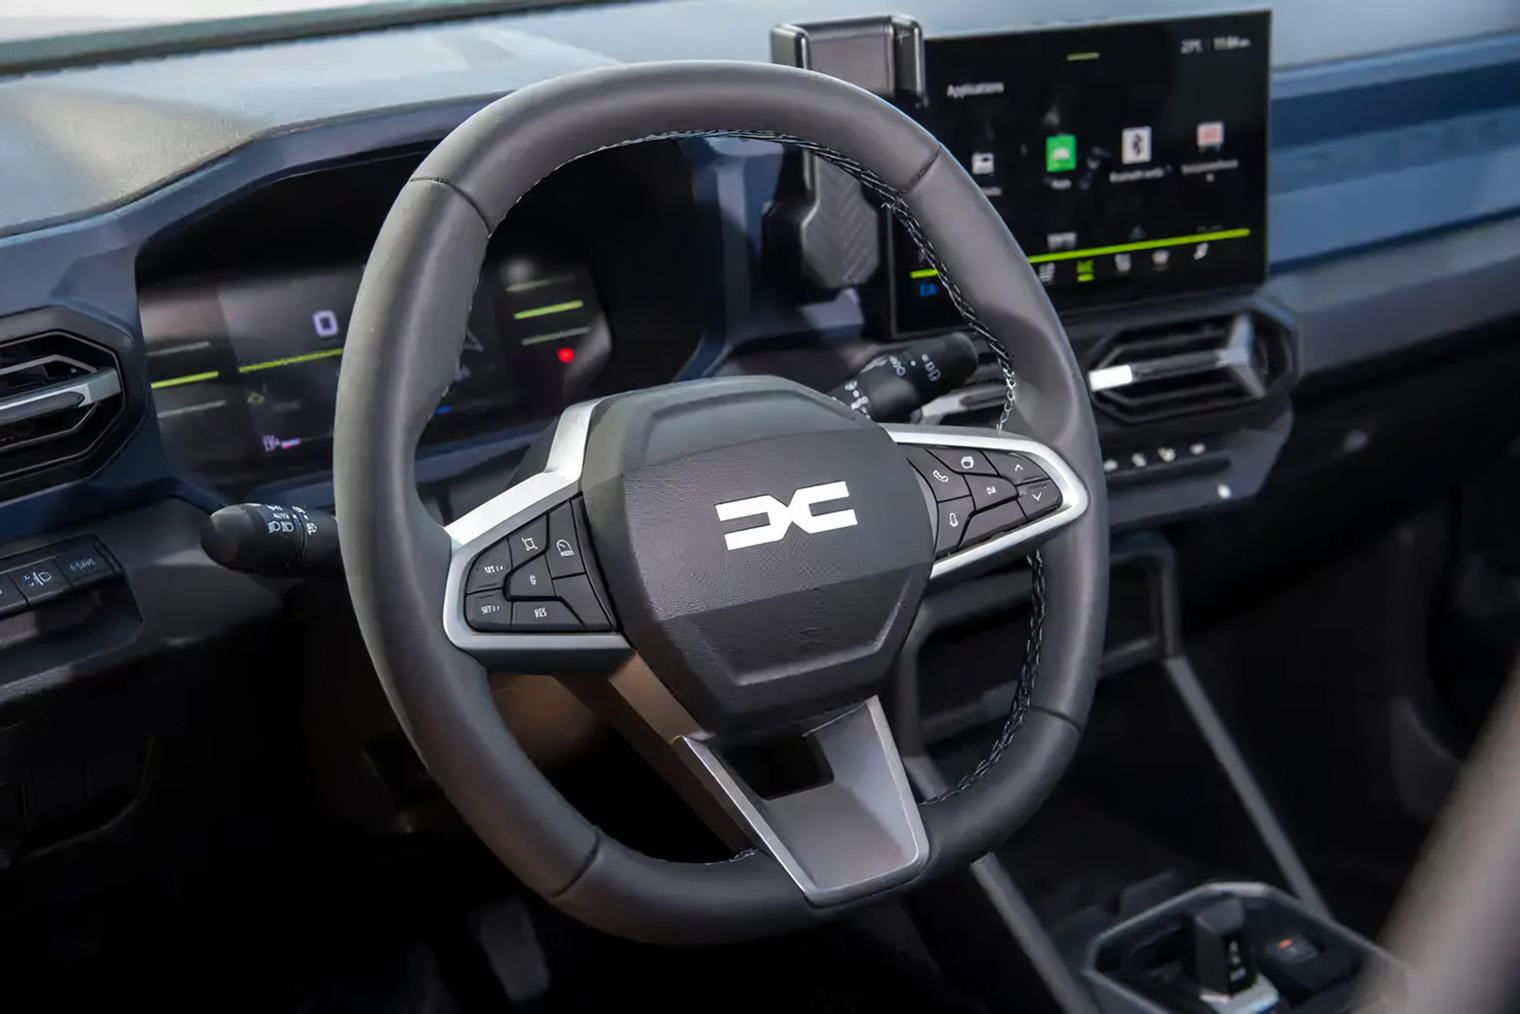 Экран на центральной консоли немного развернут в сторону водителя, а Y⁠-⁠образные воздуховоды напоминают элементы нового логотипа Dacia. Эту же форму можно увидеть в подлокотниках дверей, ДХО и задних фонарях. Источник: Dacia